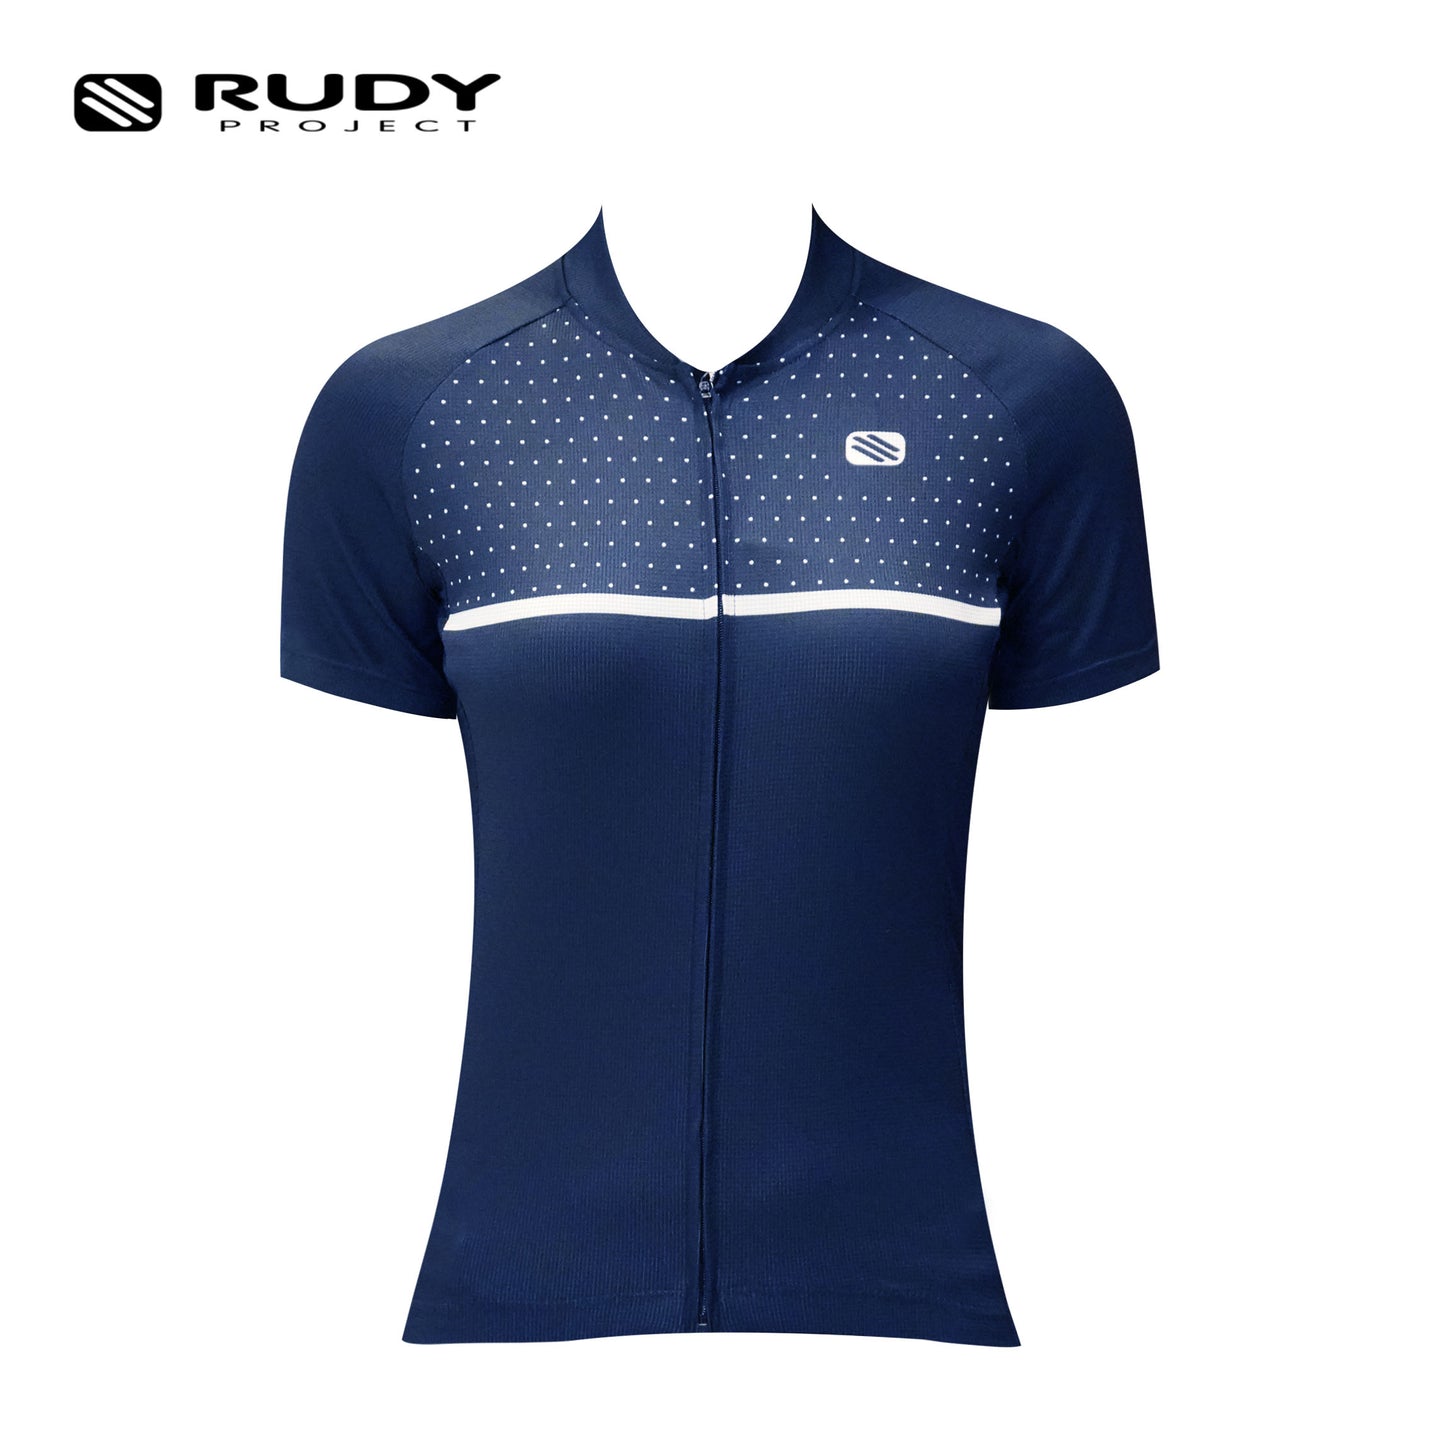 Women's Cycling Jersey in Blue